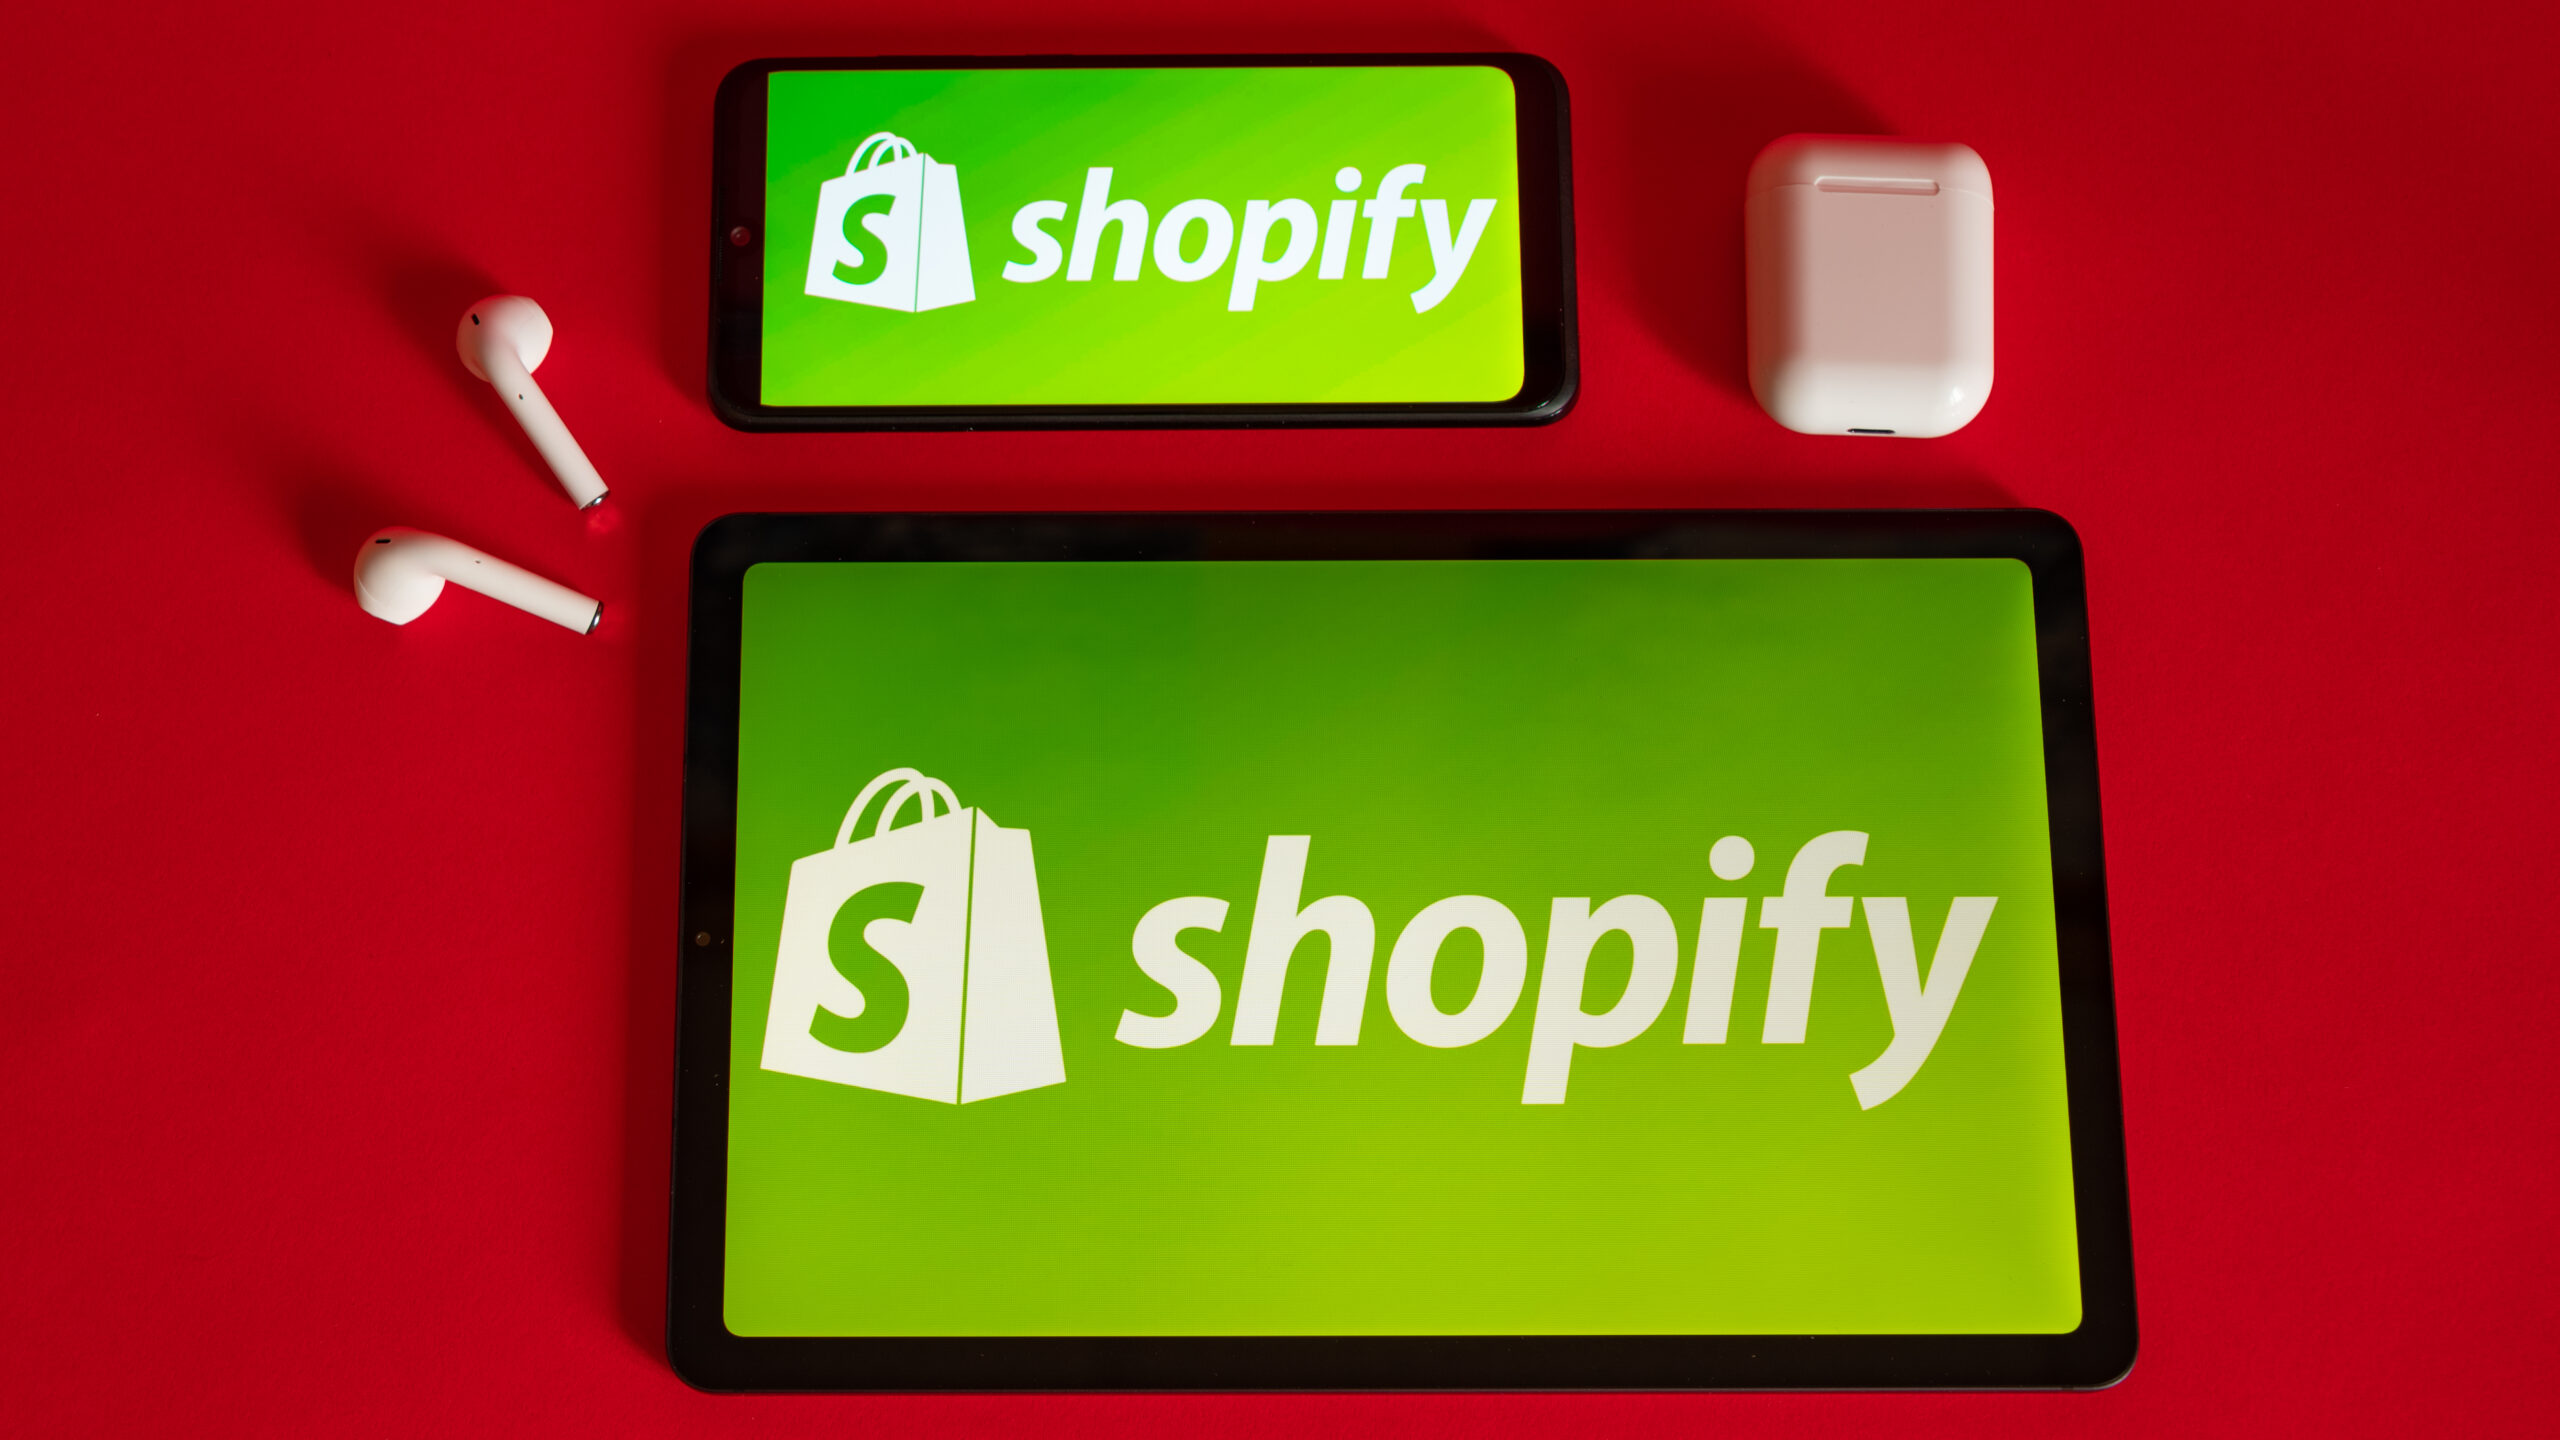 shopify-logo-iphone-scaled